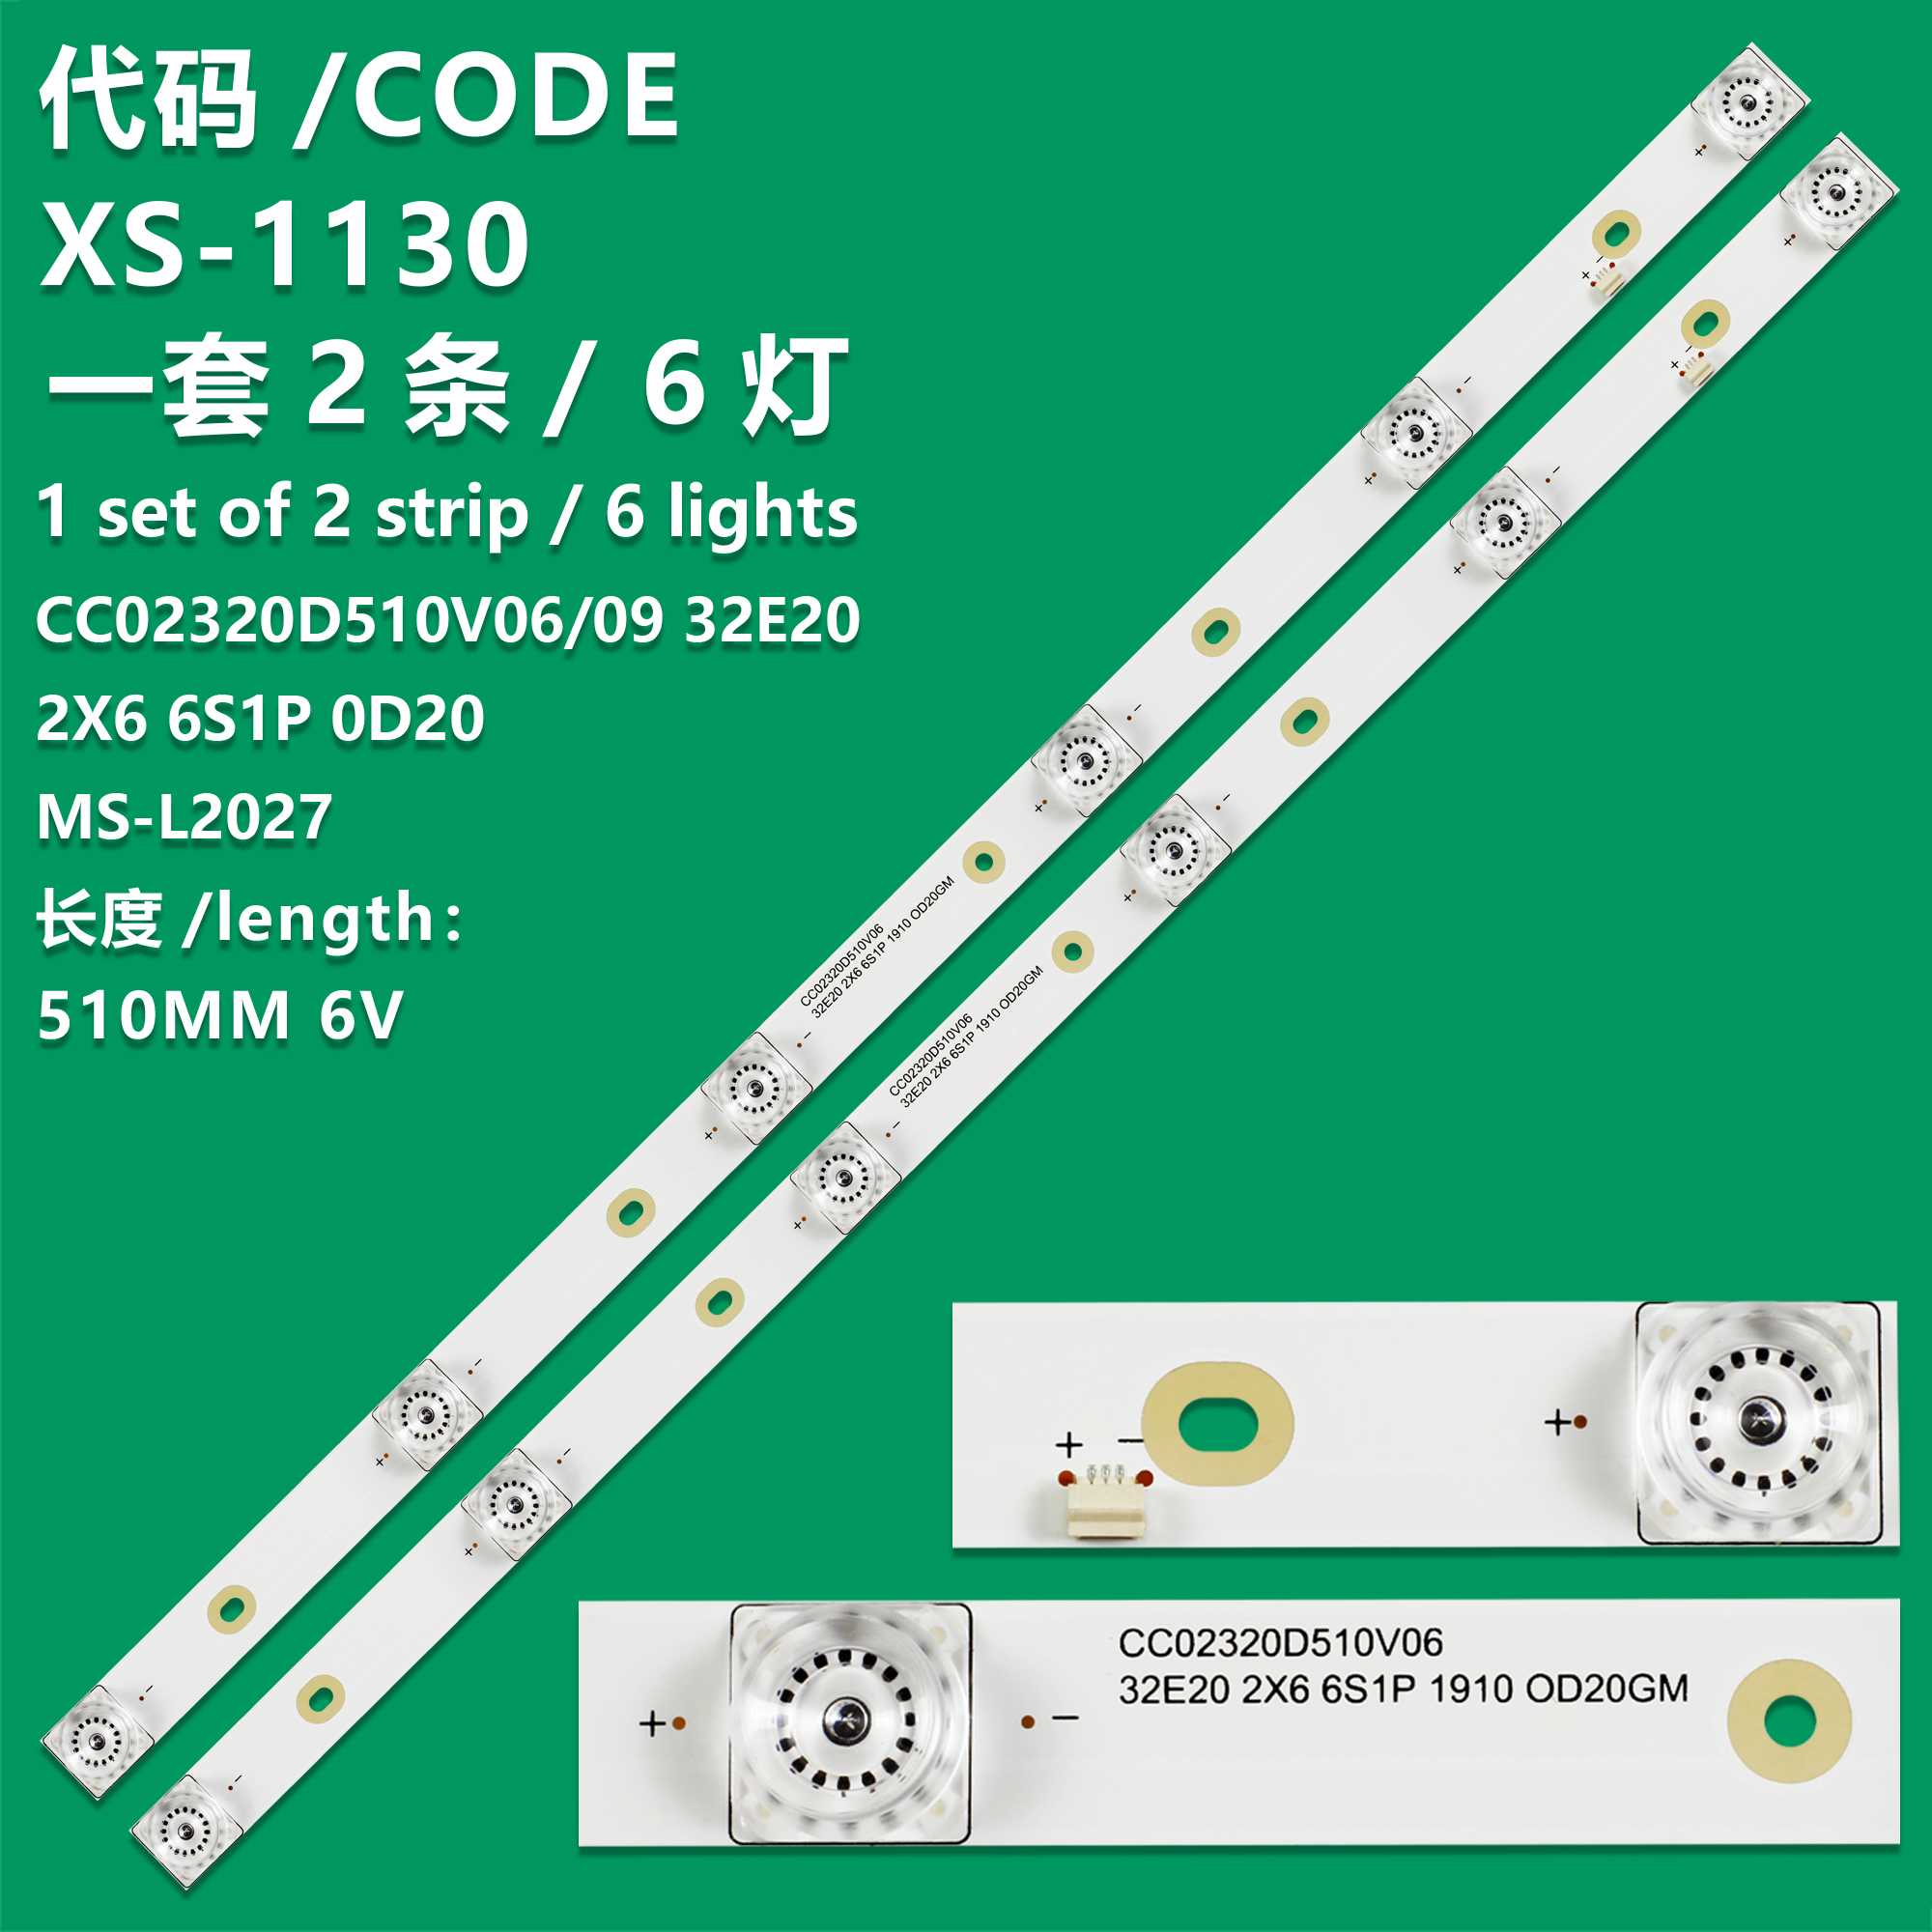 XS-1130 New LCD TV Backlight Strip 32E20 2X6 6S1P 1910 0D20, CC02320D510V09 For   Hyundai F32D7000, H32P  Level HD8332  Panda 32D6S  Suniya SU-3288